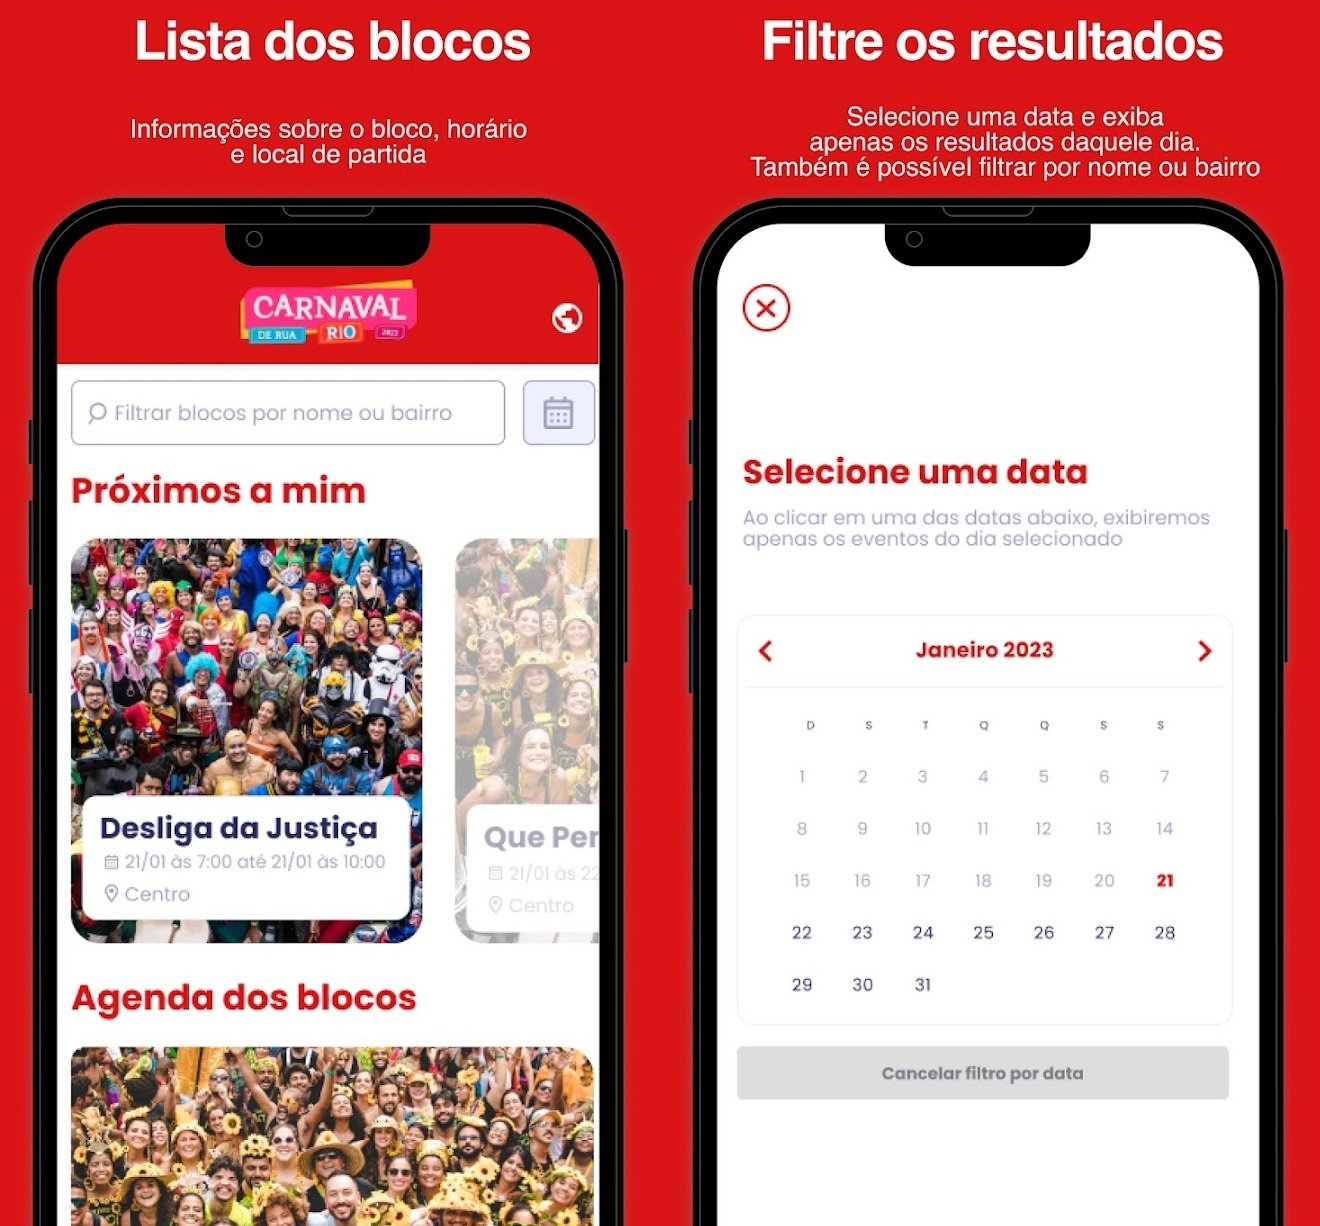 Partiu Bloquimmm é um aplicativo para informar sobre blocos durante o carnaval do Rio de Janeiro